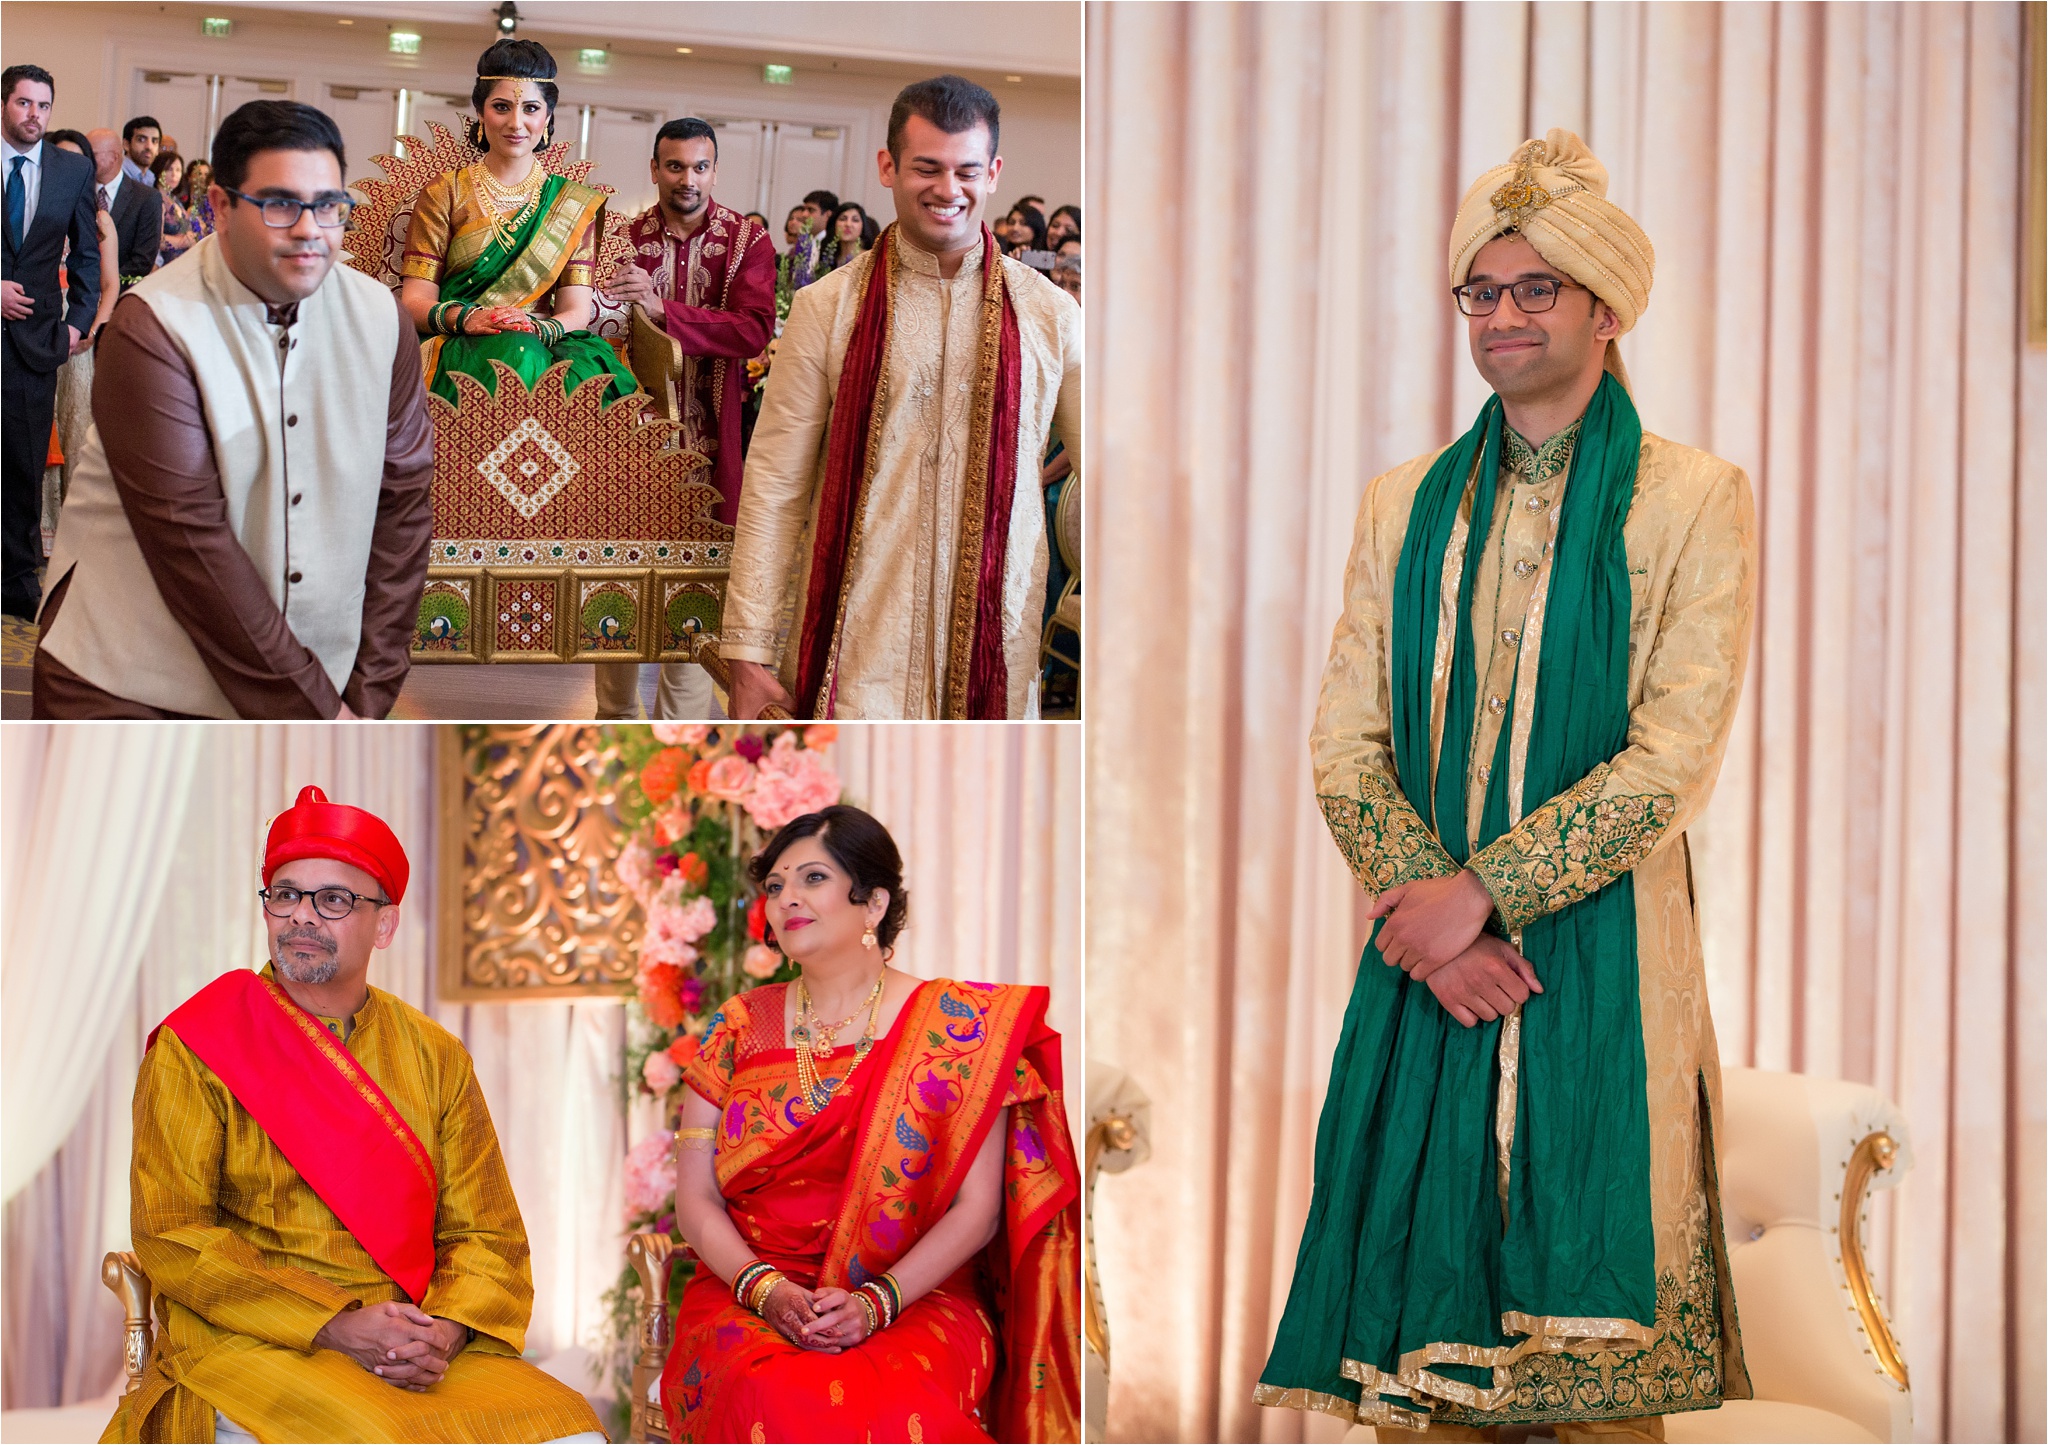 SanJose_Fairmont_Indian_Wedding_0046.jpg